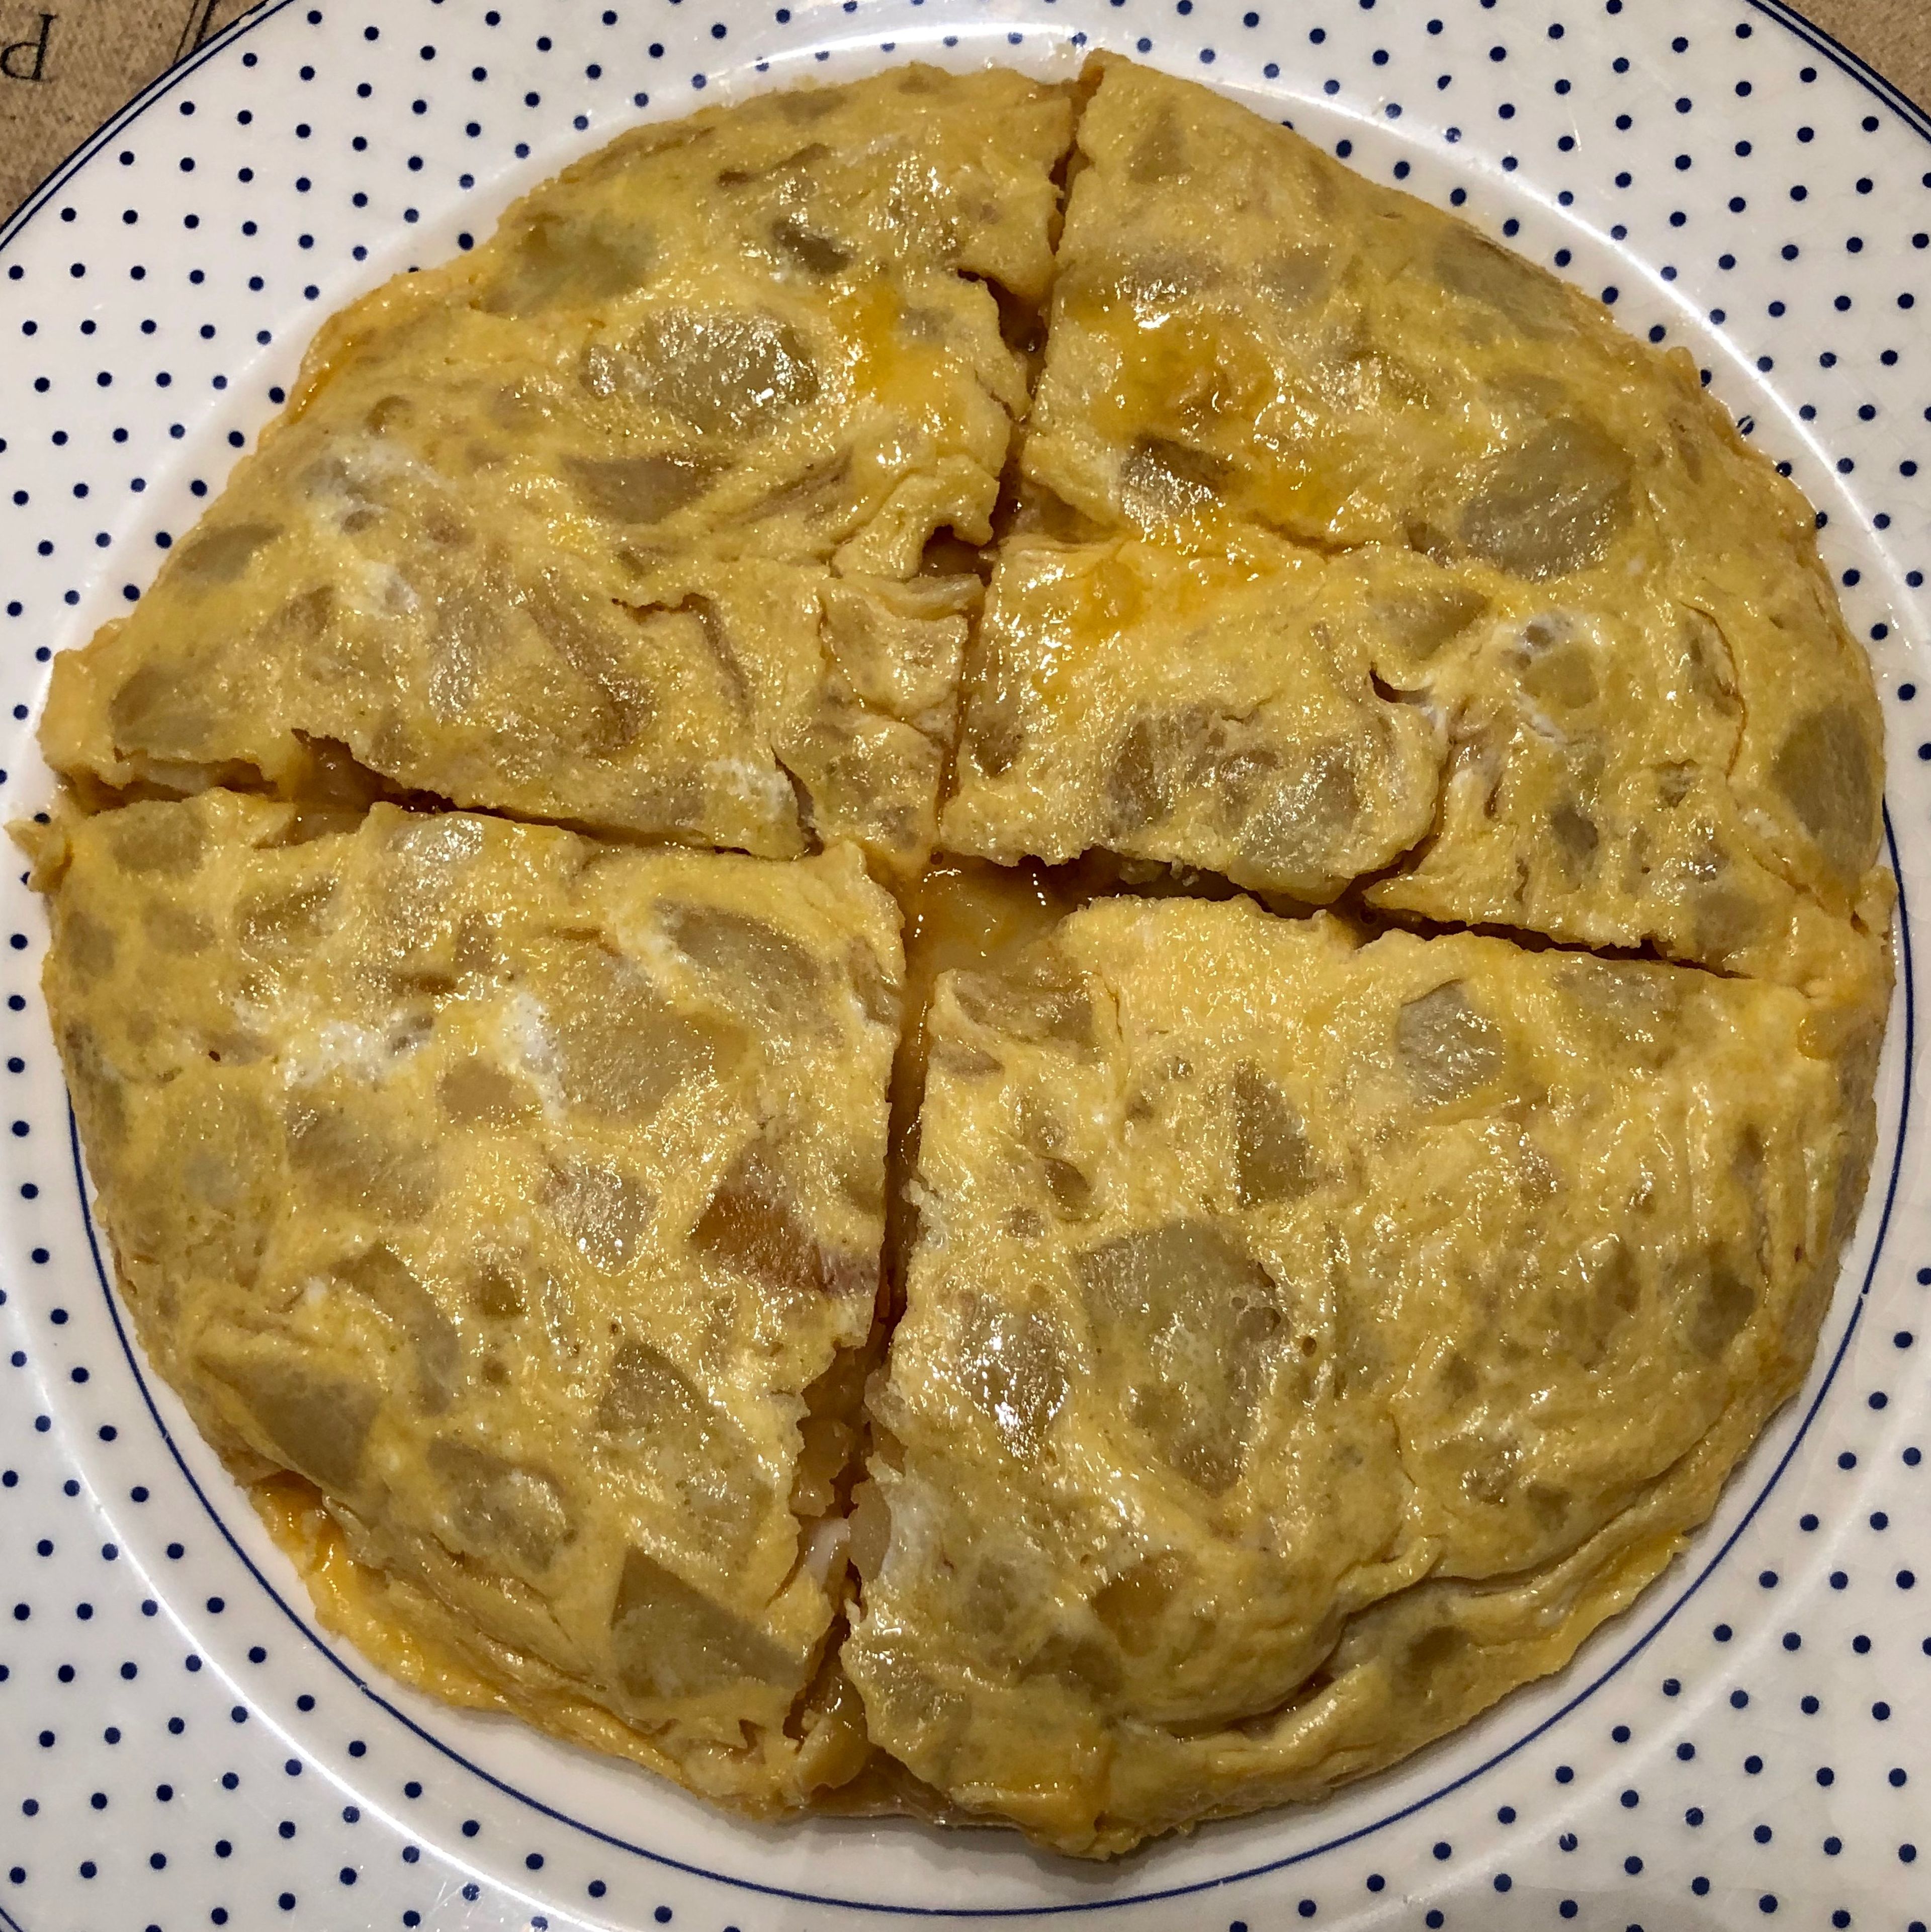 Spanish potato omelette / Tortilla de patatas